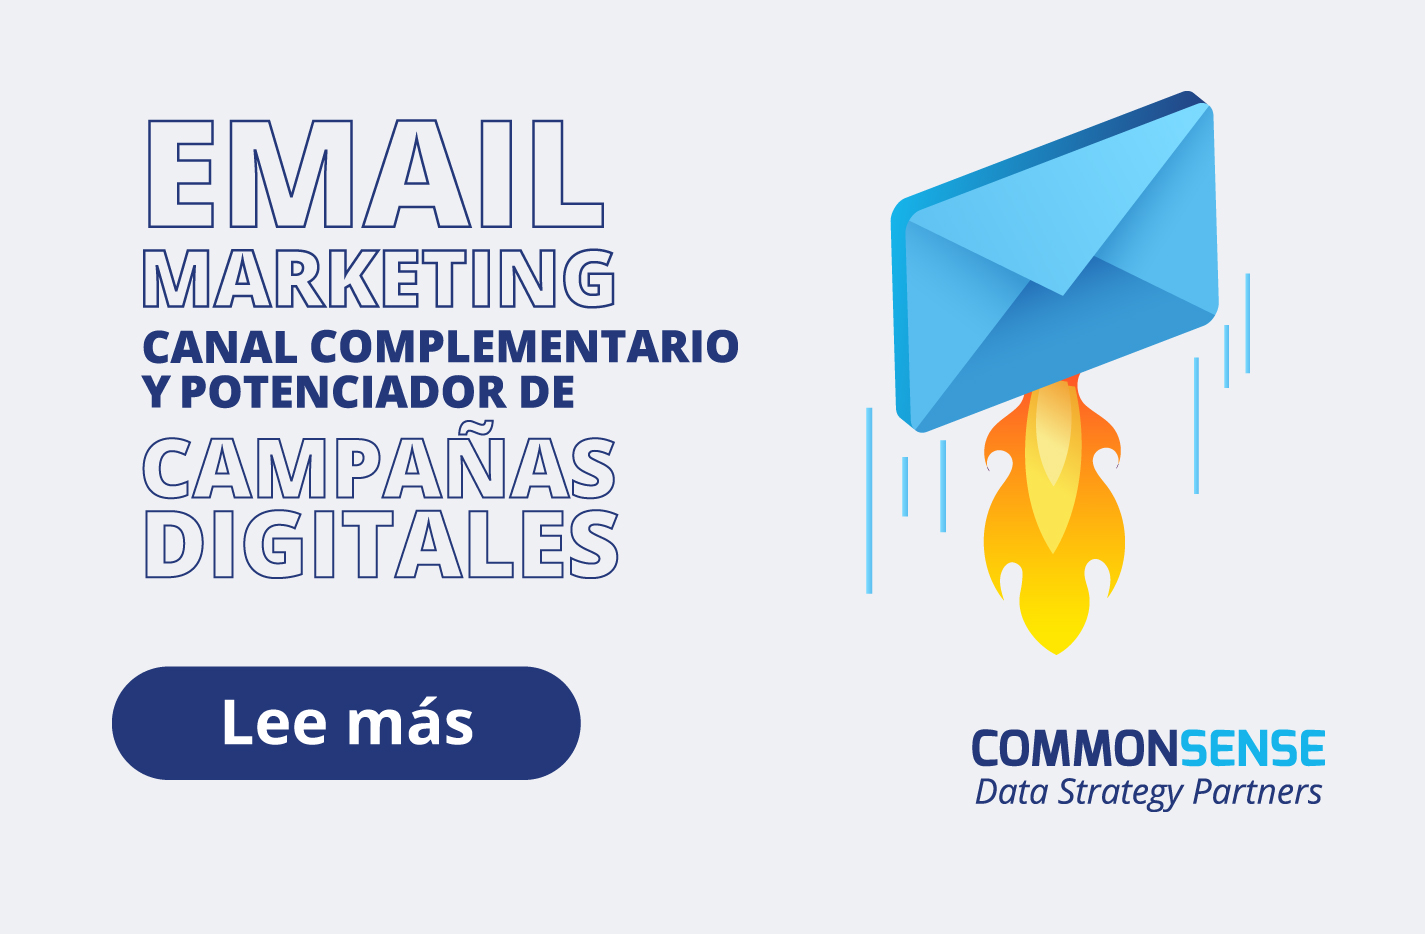 El Email Marketing, canal complementario y potenciador de campañas digitales.